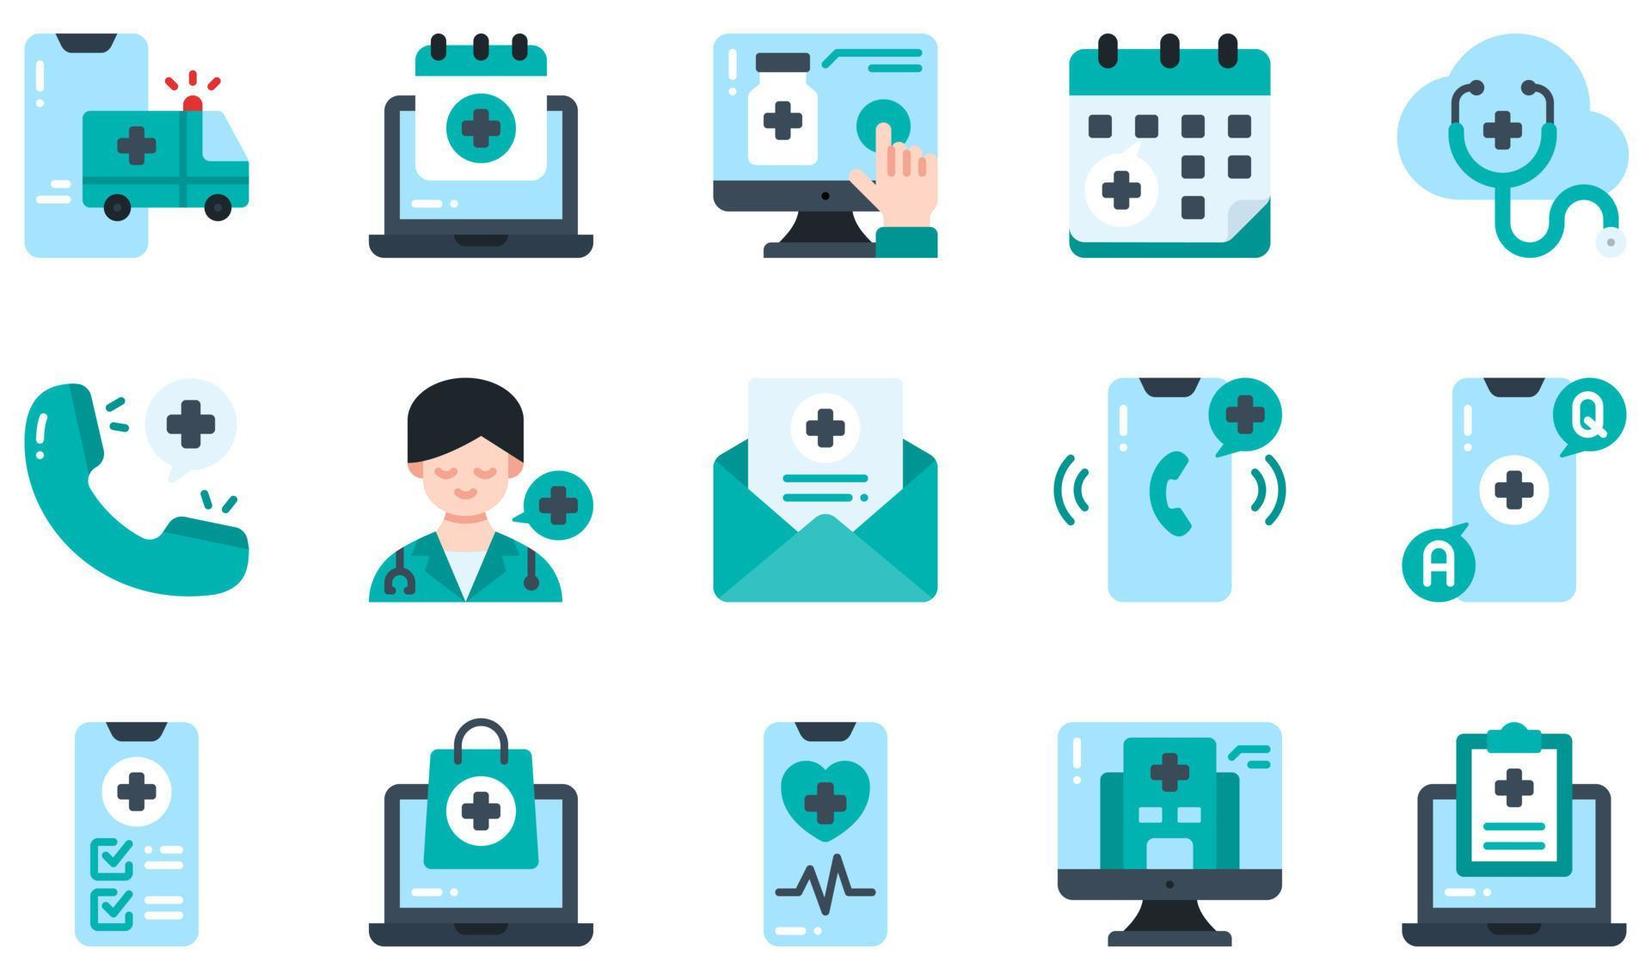 set di icone vettoriali relative alla telemedicina. contiene icone come ambulanza, appuntamento, acquisto online, consulenza, domande frequenti, assistenza sanitaria e altro ancora.